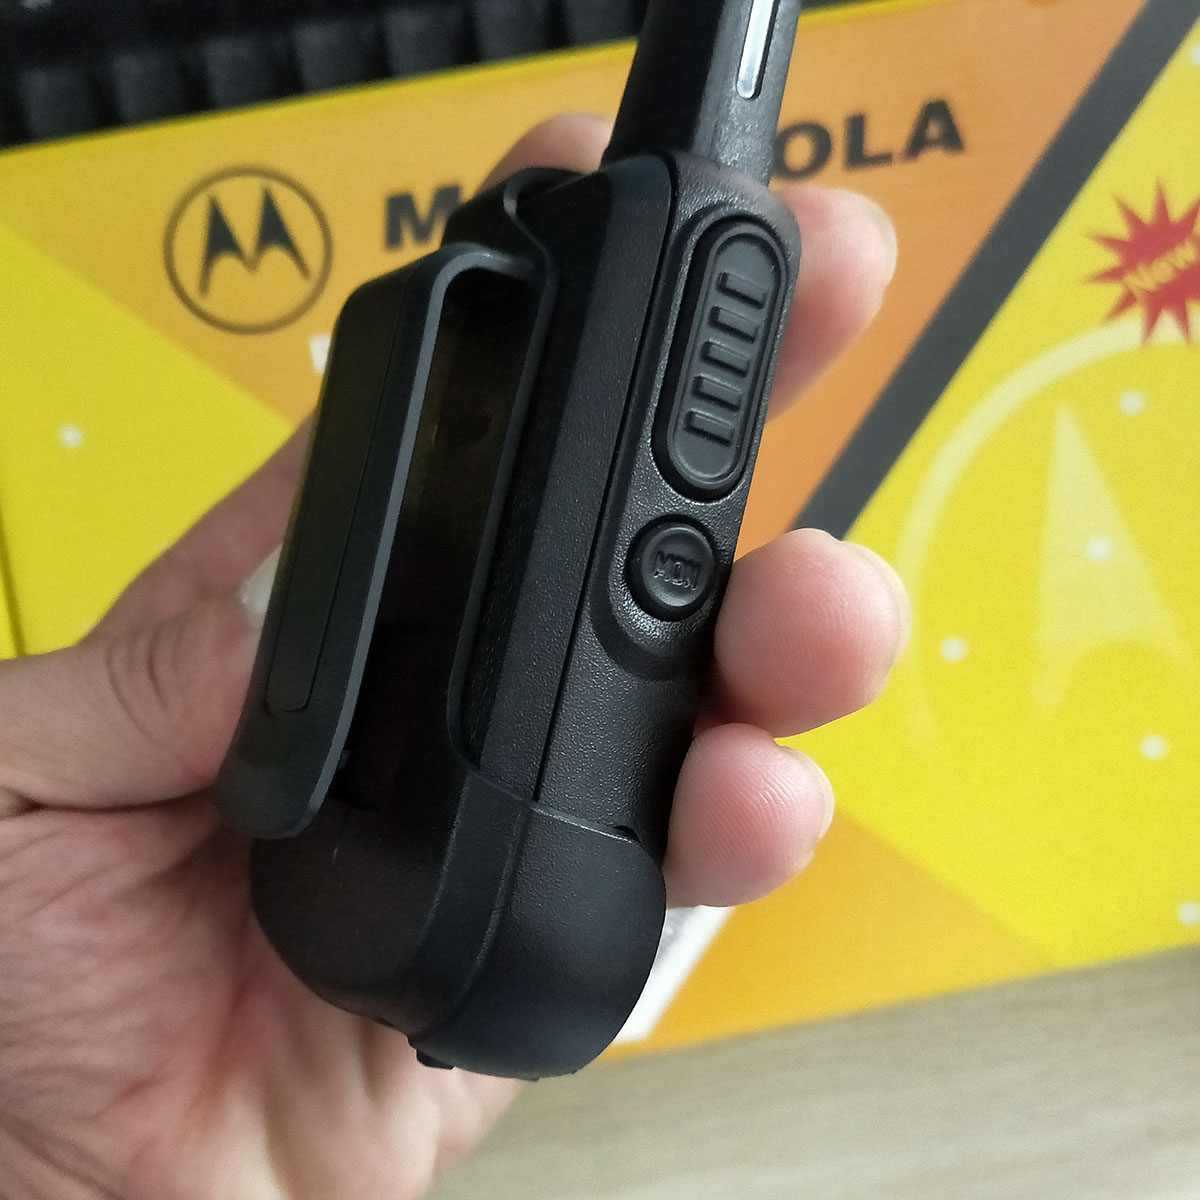 Bộ đàm Motorola Minitor VI, bộ đàm mini cầm tay nhỏ gọn - Hàng nhập khẩu